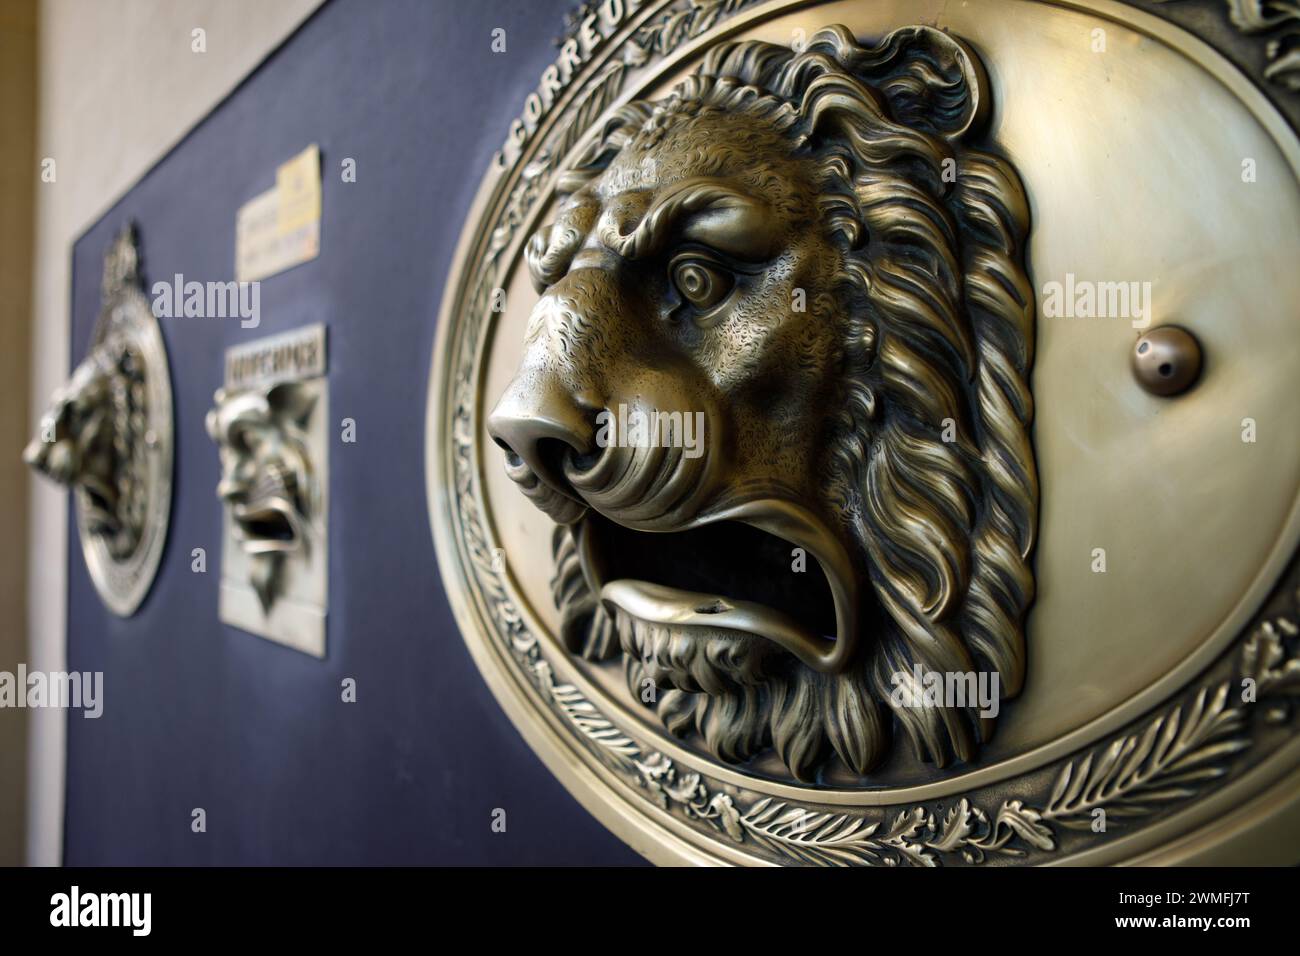 Correos es España boîte aux lettres du bureau de poste en forme de tête de lion Banque D'Images